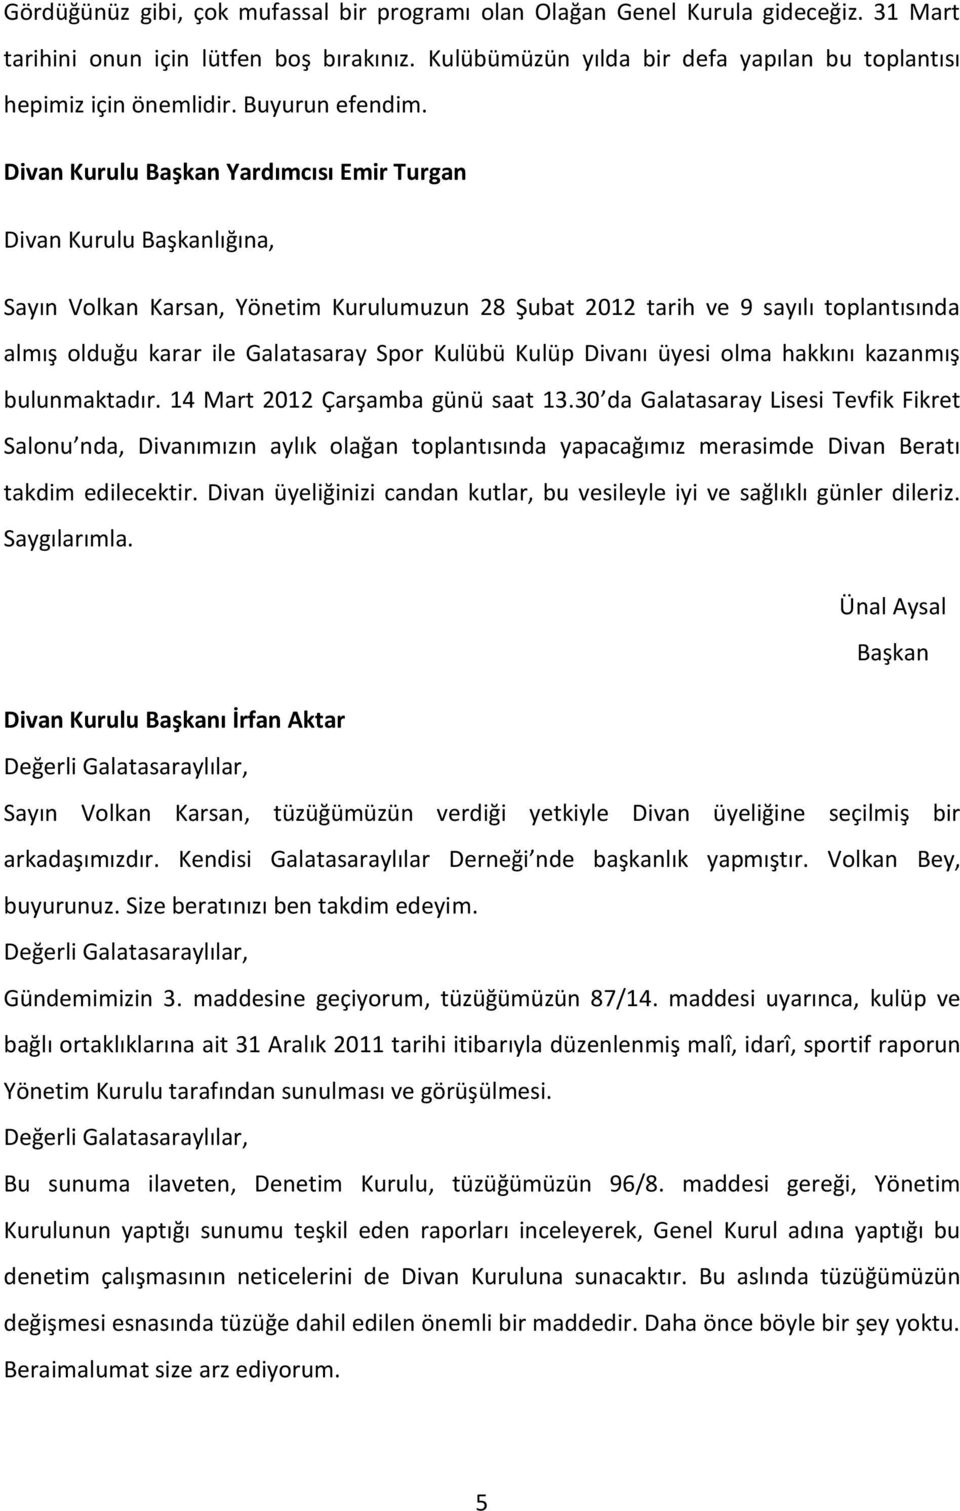 Divan Kurulu Başkan Yardımcısı Emir Turgan Divan Kurulu Başkanlığına, Sayın Volkan Karsan, Yönetim Kurulumuzun 28 Şubat 2012 tarih ve 9 sayılı toplantısında almış olduğu karar ile Galatasaray Spor